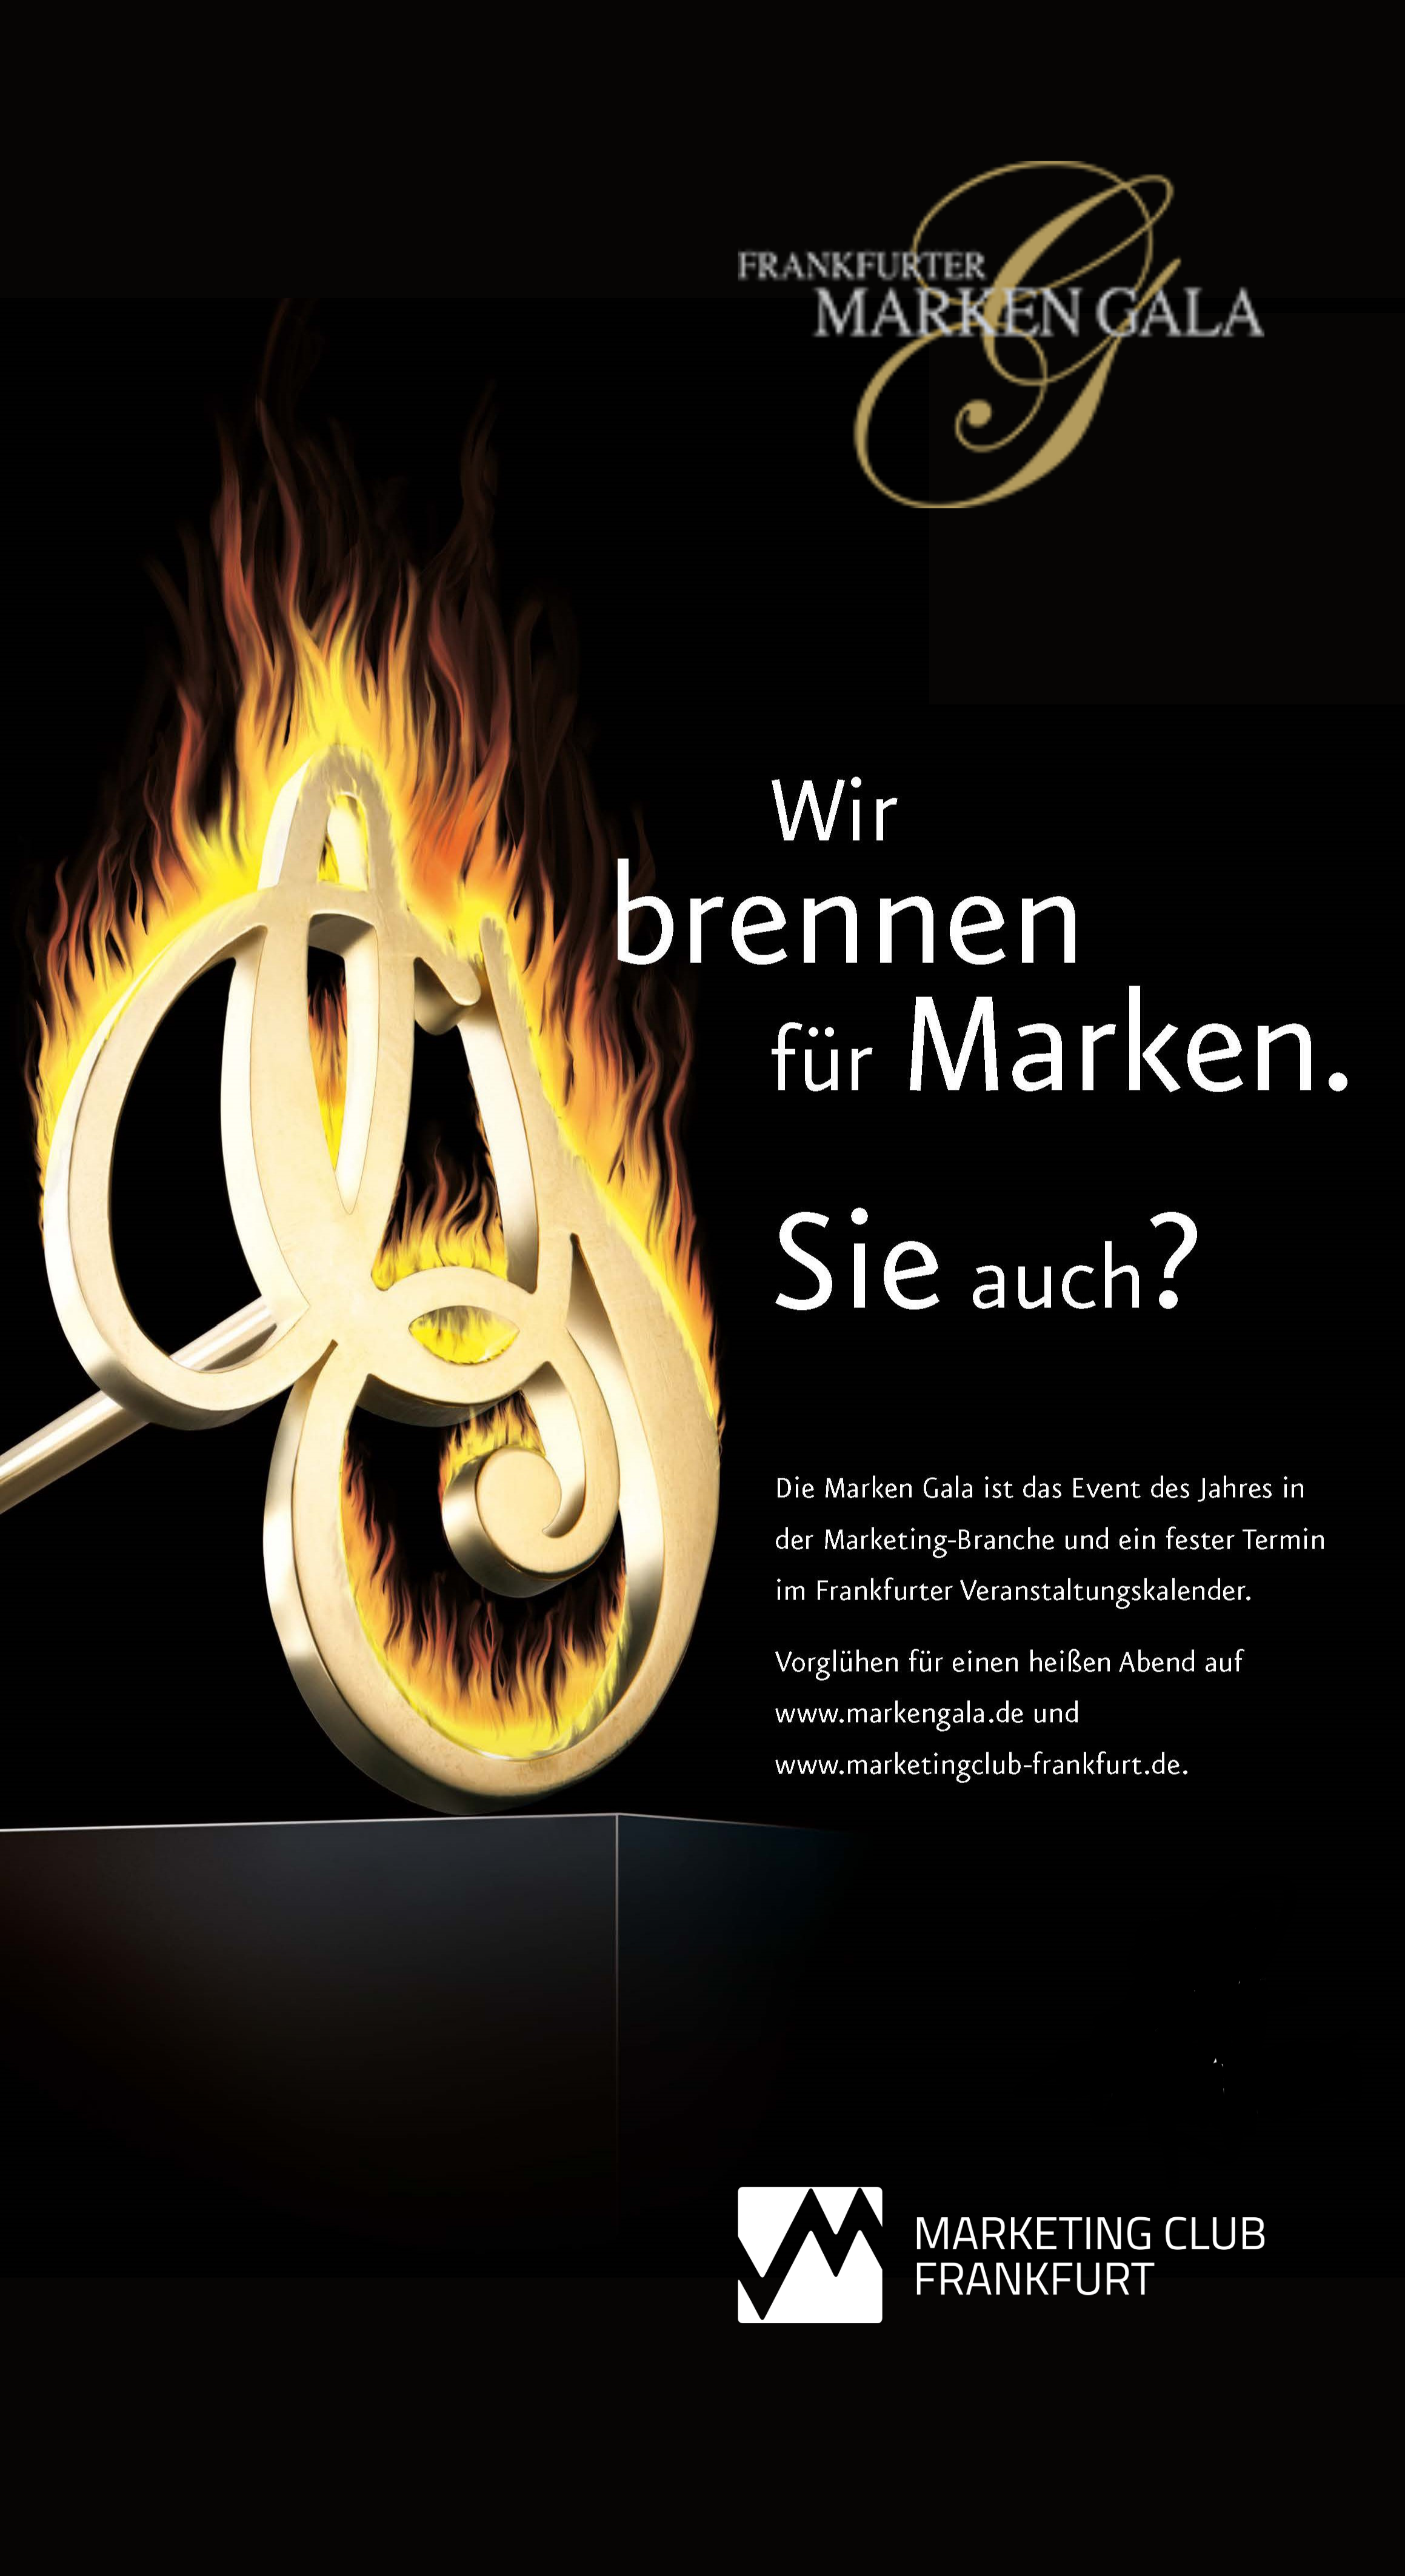 Wir brennen für Marken: Die Jury des Goldenen Brandeisen.